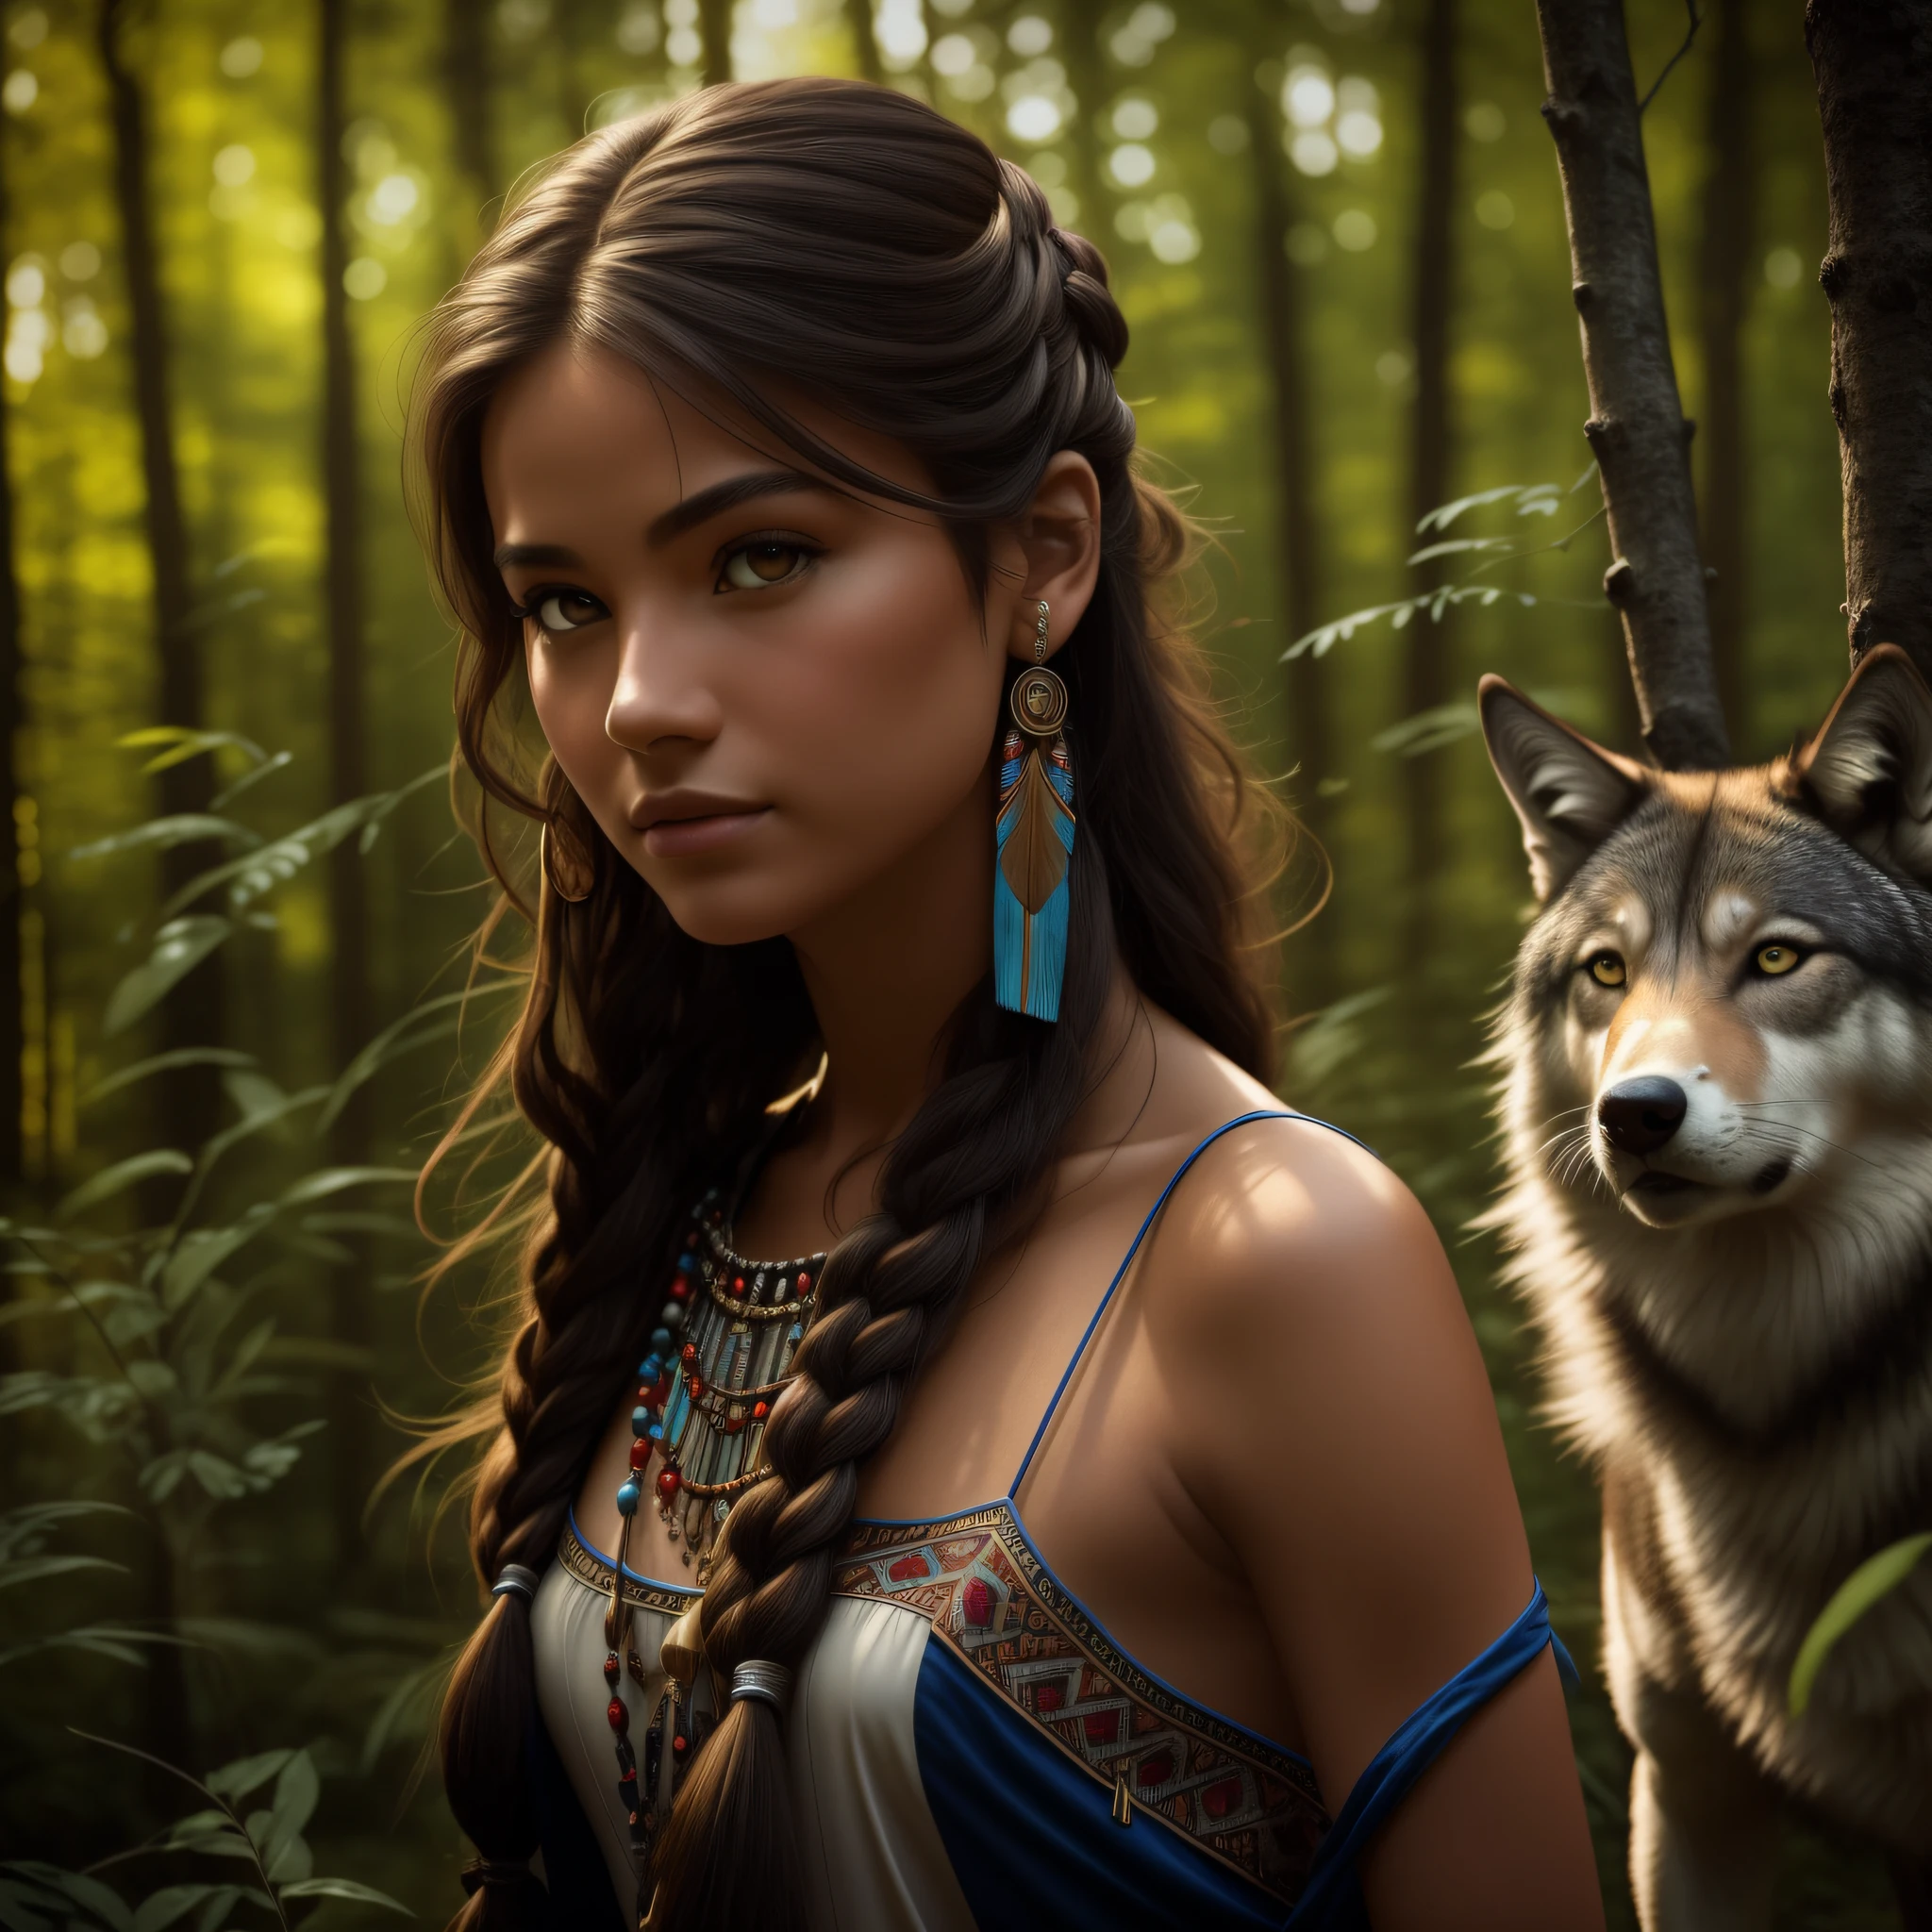 (คุณภาพดีที่สุด, ผลงานชิ้นเอก: 1.1), (ความสมจริง: 1.4),(ผลงานชิ้นเอก, เหมือนจริง: 1.4), (ความแม่นยําสูงสุด: 1.2); (ด้านหน้า: 1.3), เหมือนจริง portrait of a Native American girl with indigenous adornments with her ultra เหมือนจริง pet wolf in the forest, การแต่งกายของชนเผ่า, ผมยาวเป็นพิเศษ, ไหล่เปลือย, ท้องฟ้ายามค่ำคืน, กาแล็กซี่เรืองแสง, มหาสมุทร, น้ำ, เอียงศีรษะ, ลม, เมฆ, แสงธรรมชาติ, กลางแจ้ง, ตามลำพัง, หยุดพัก, แสงระดับโรงภาพยนตร์, ความละเอียดสูงเป็นพิเศษ, 8k เอ่อ, ลูกปัดฟิล์ม,  กายวิภาคศาสตร์ที่สมบูรณ์แบบ, Delicate and ละเอียดอ่อน skin, เงาที่ดีที่สุด, ละเอียดอ่อน, ดิบ, ความละเอียดสูง, นักล่า, กลางคืน, ความสว่างของพระจันทร์เต็มดวง.